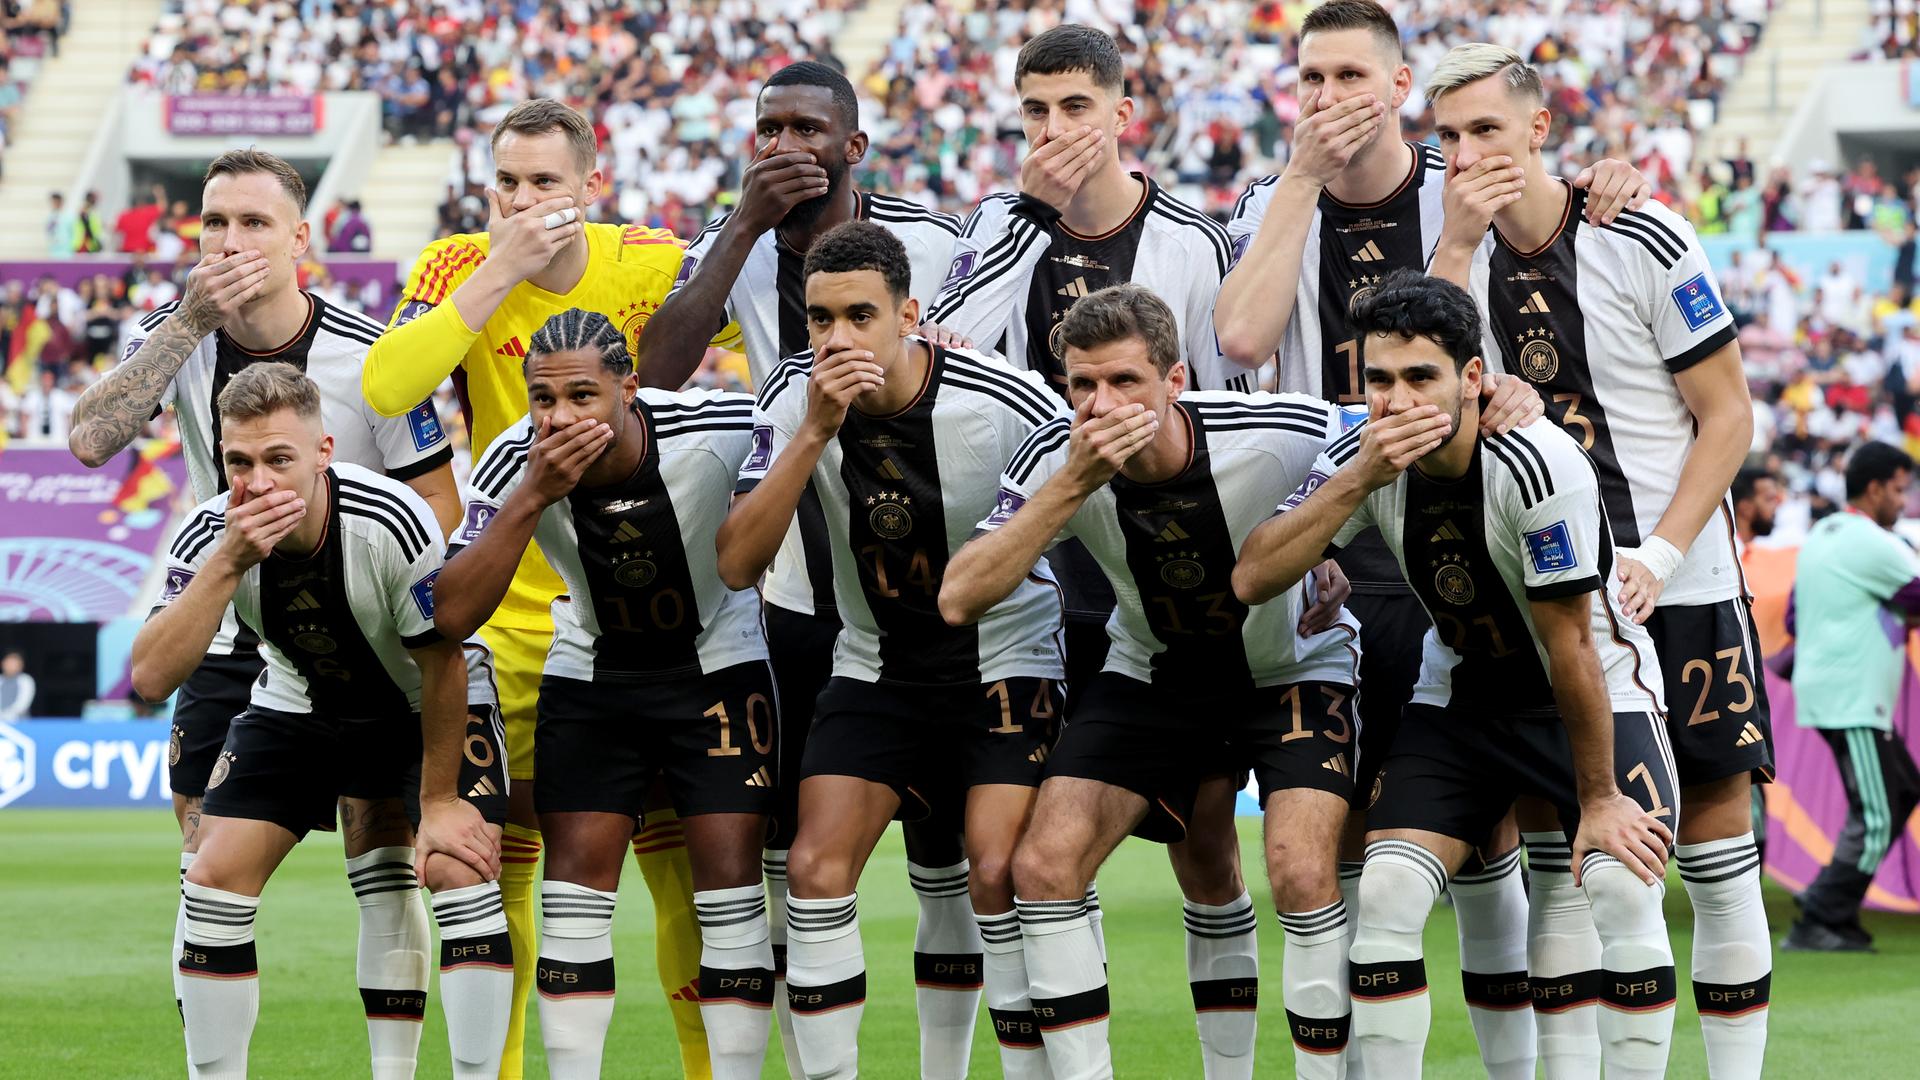 Die Spieler der deutschen Mannschaft halten sich beim Foto die Hände vor den Mund.